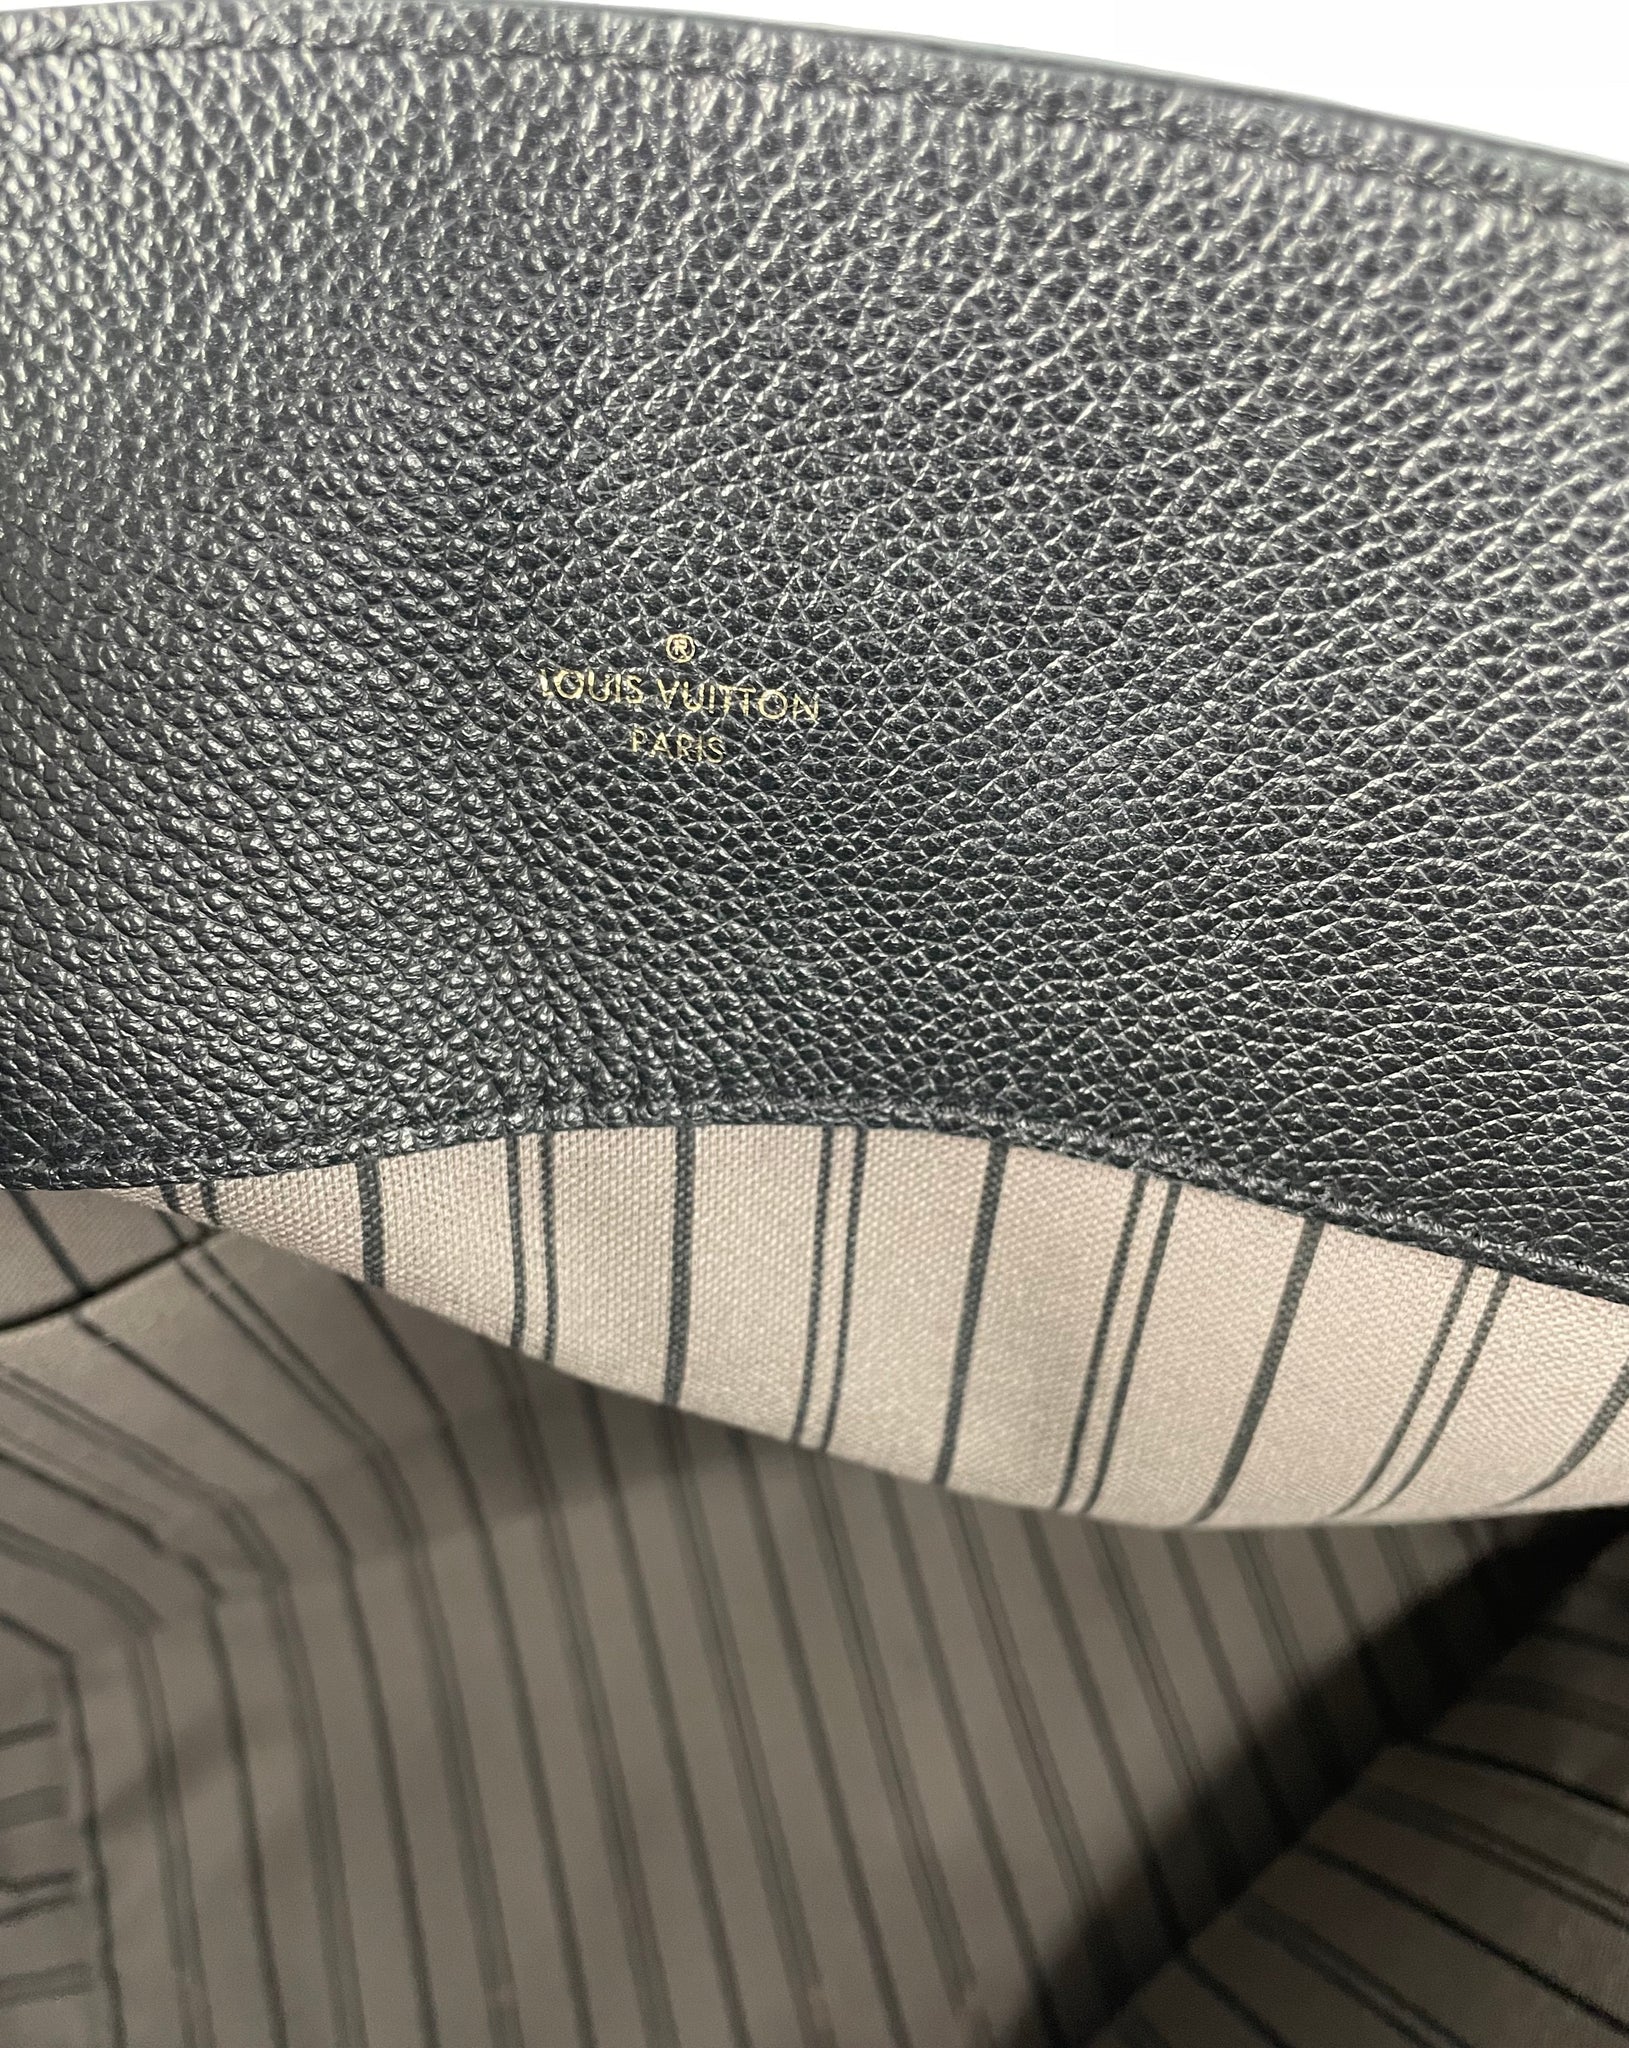 Designer Kabinett - [NEW IN] LOUIS VUITTON Black Monogram Empreinte Leather Melie  Bag ( new & with dustbag) • OUR PRICE - 1700€ • #louisvuitton #lvempreinte  #lvempreintebag #designerkabinett #secondhandluxury #prelovedluxury